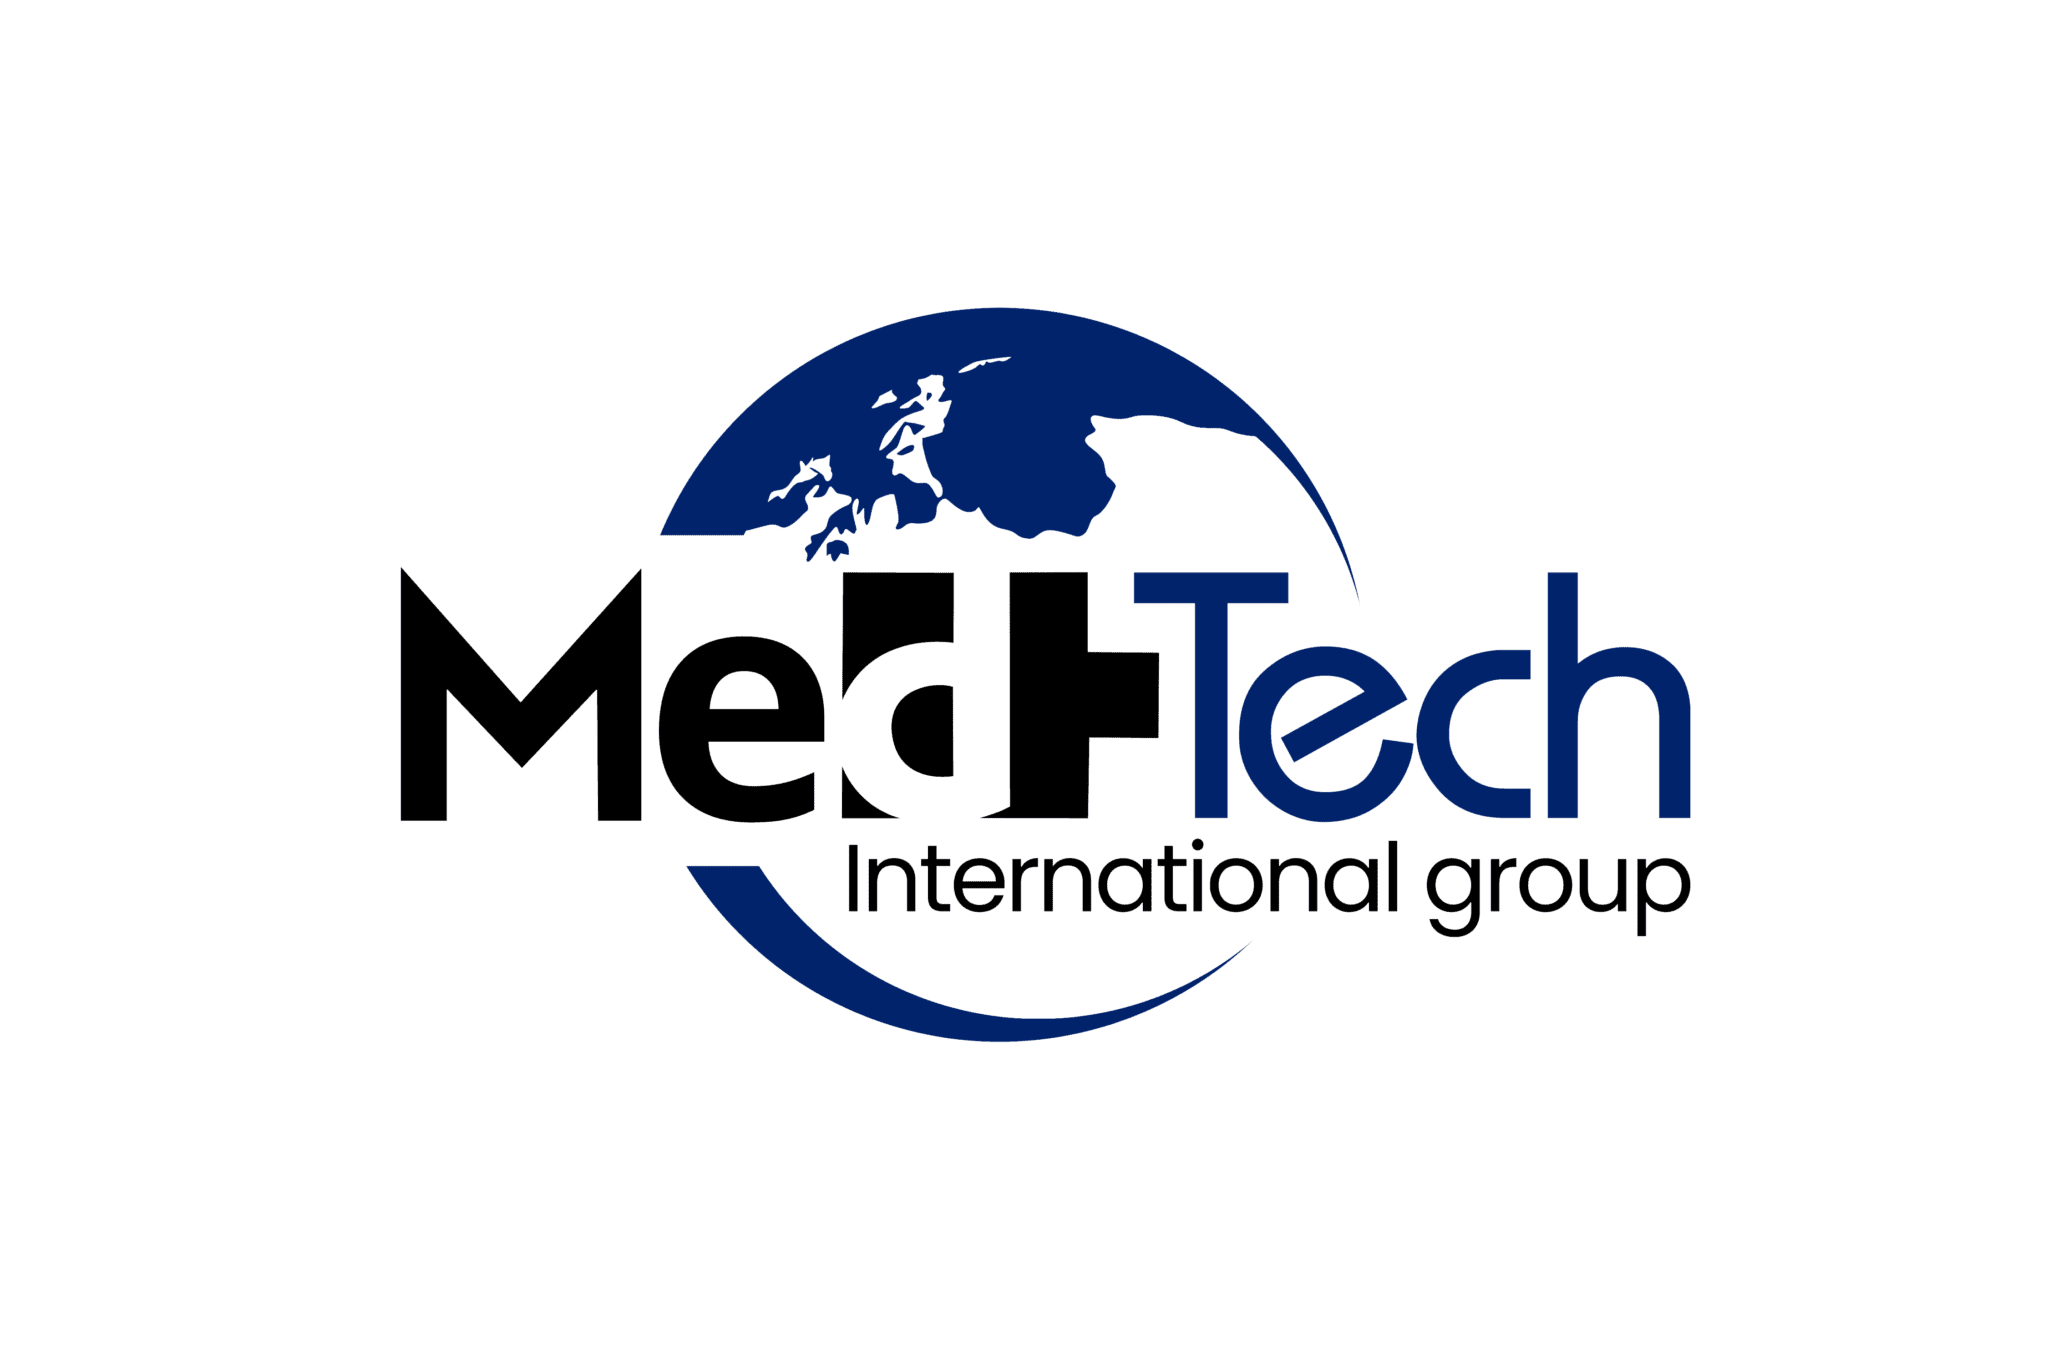 MedTech International Group